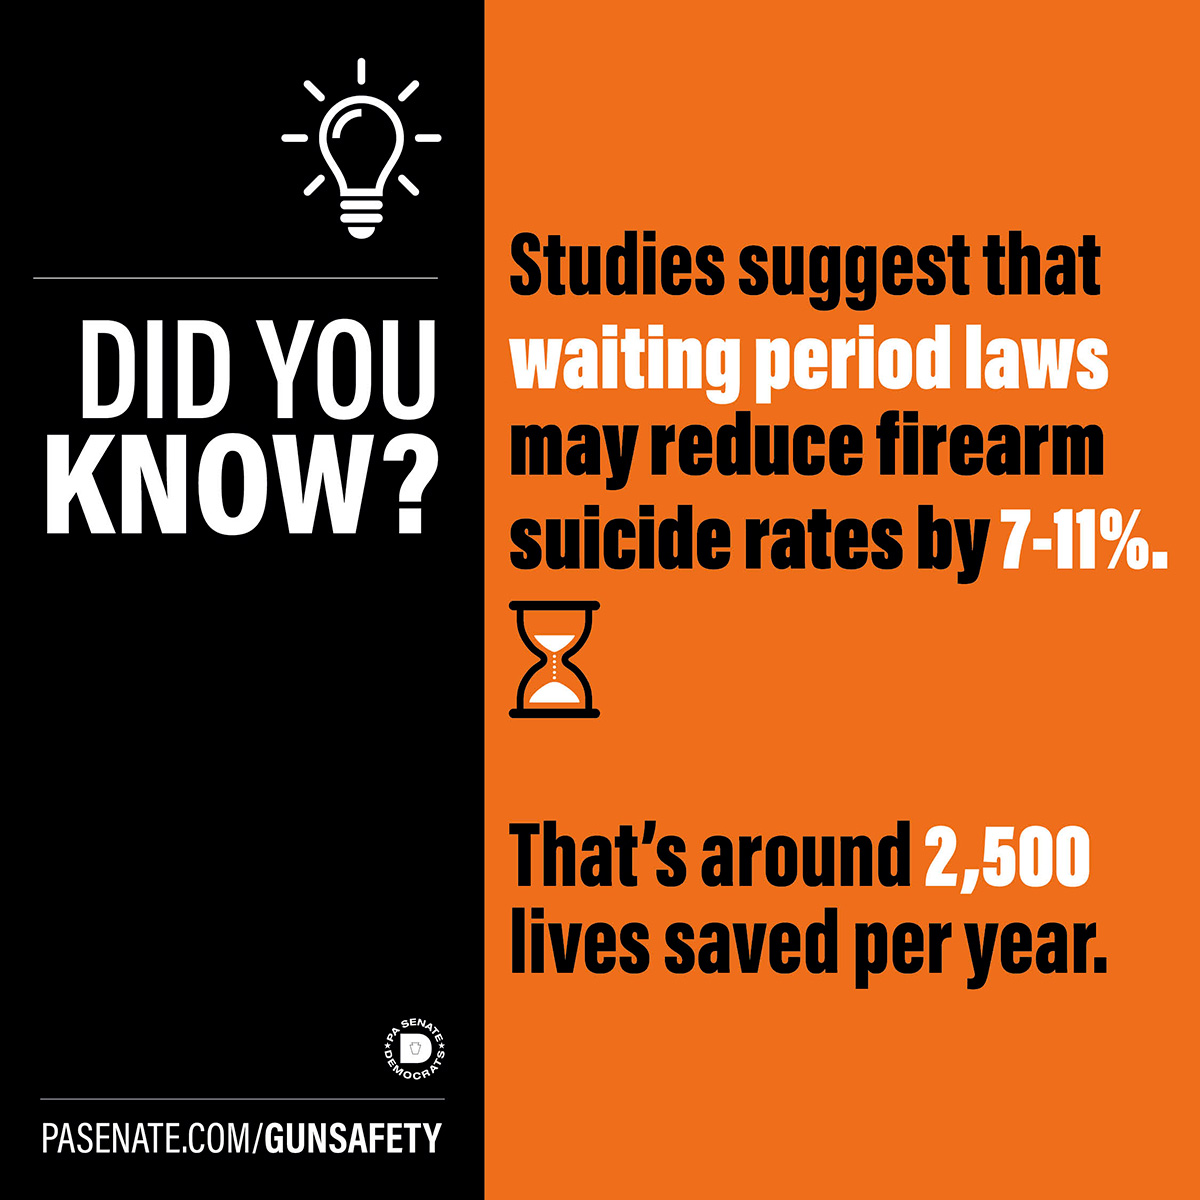 ¿Sabía que...? Los estudios sugieren que las leyes sobre periodos de espera pueden reducir las tasas de suicidio por arma de fuego entre un 7 y un 11%.